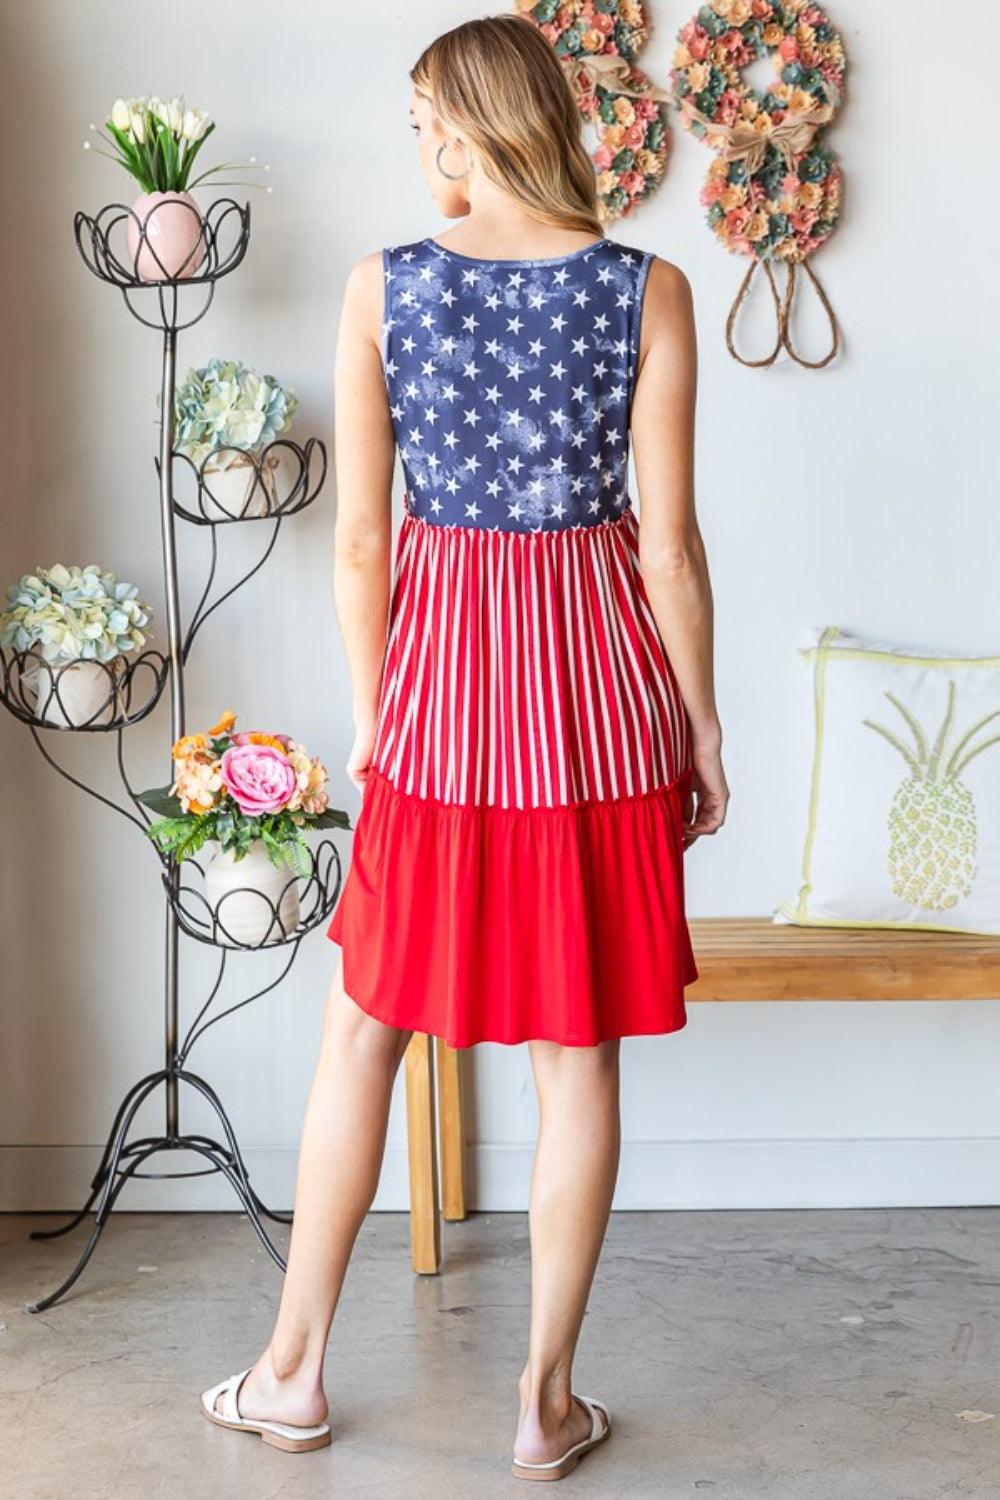 Heimish Full Size US Flag Theme Contrast Tank Dress Midi Dresses